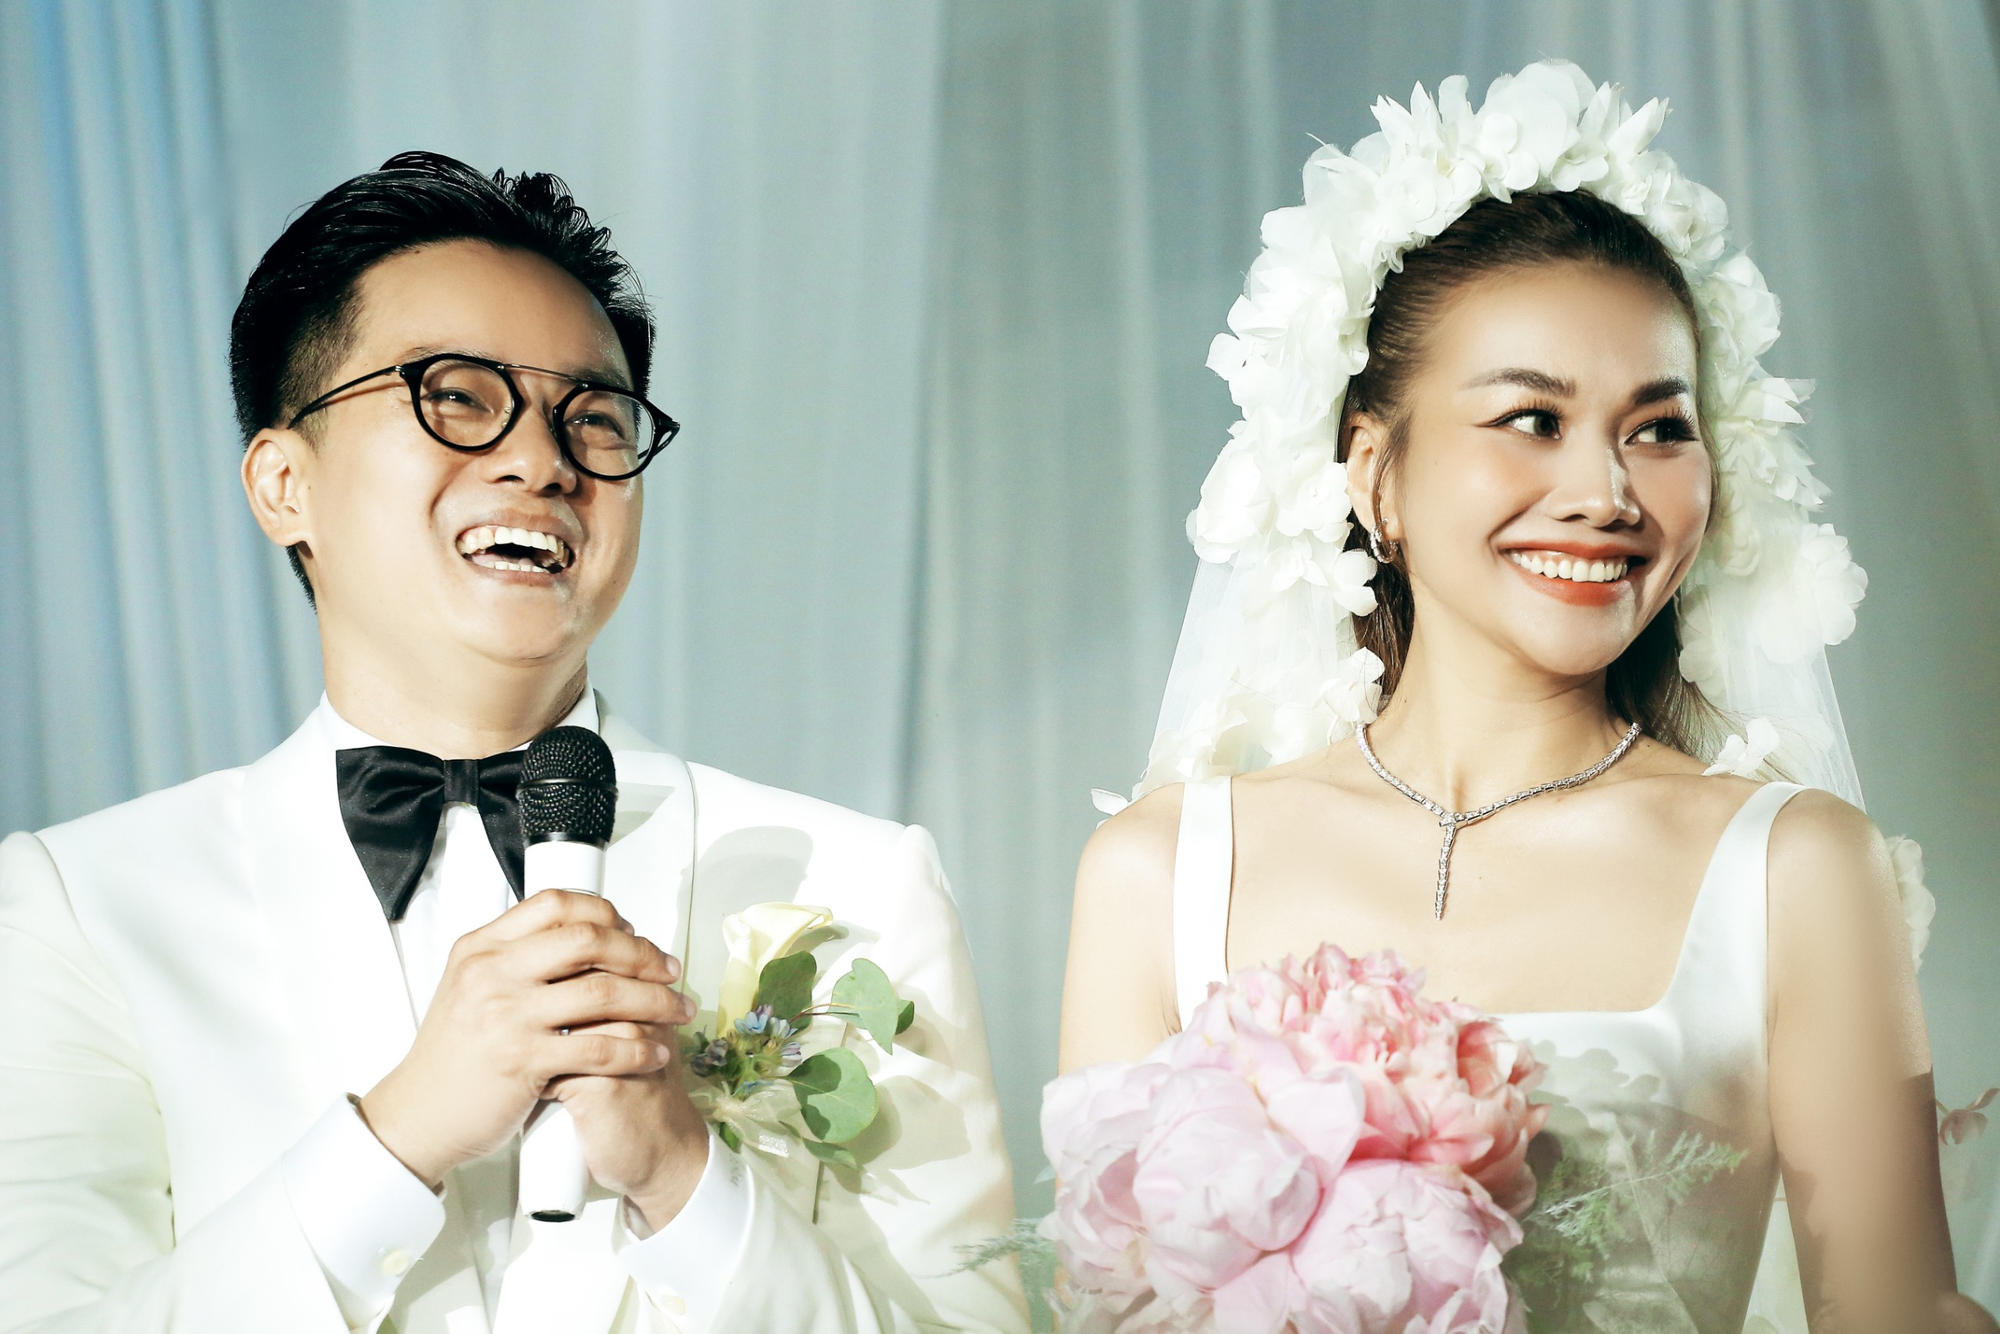 Sau gần 1 tháng cưới, Thanh Hằng tiết lộ mình và chồng vẫn chưa làm một việc- Ảnh 2.